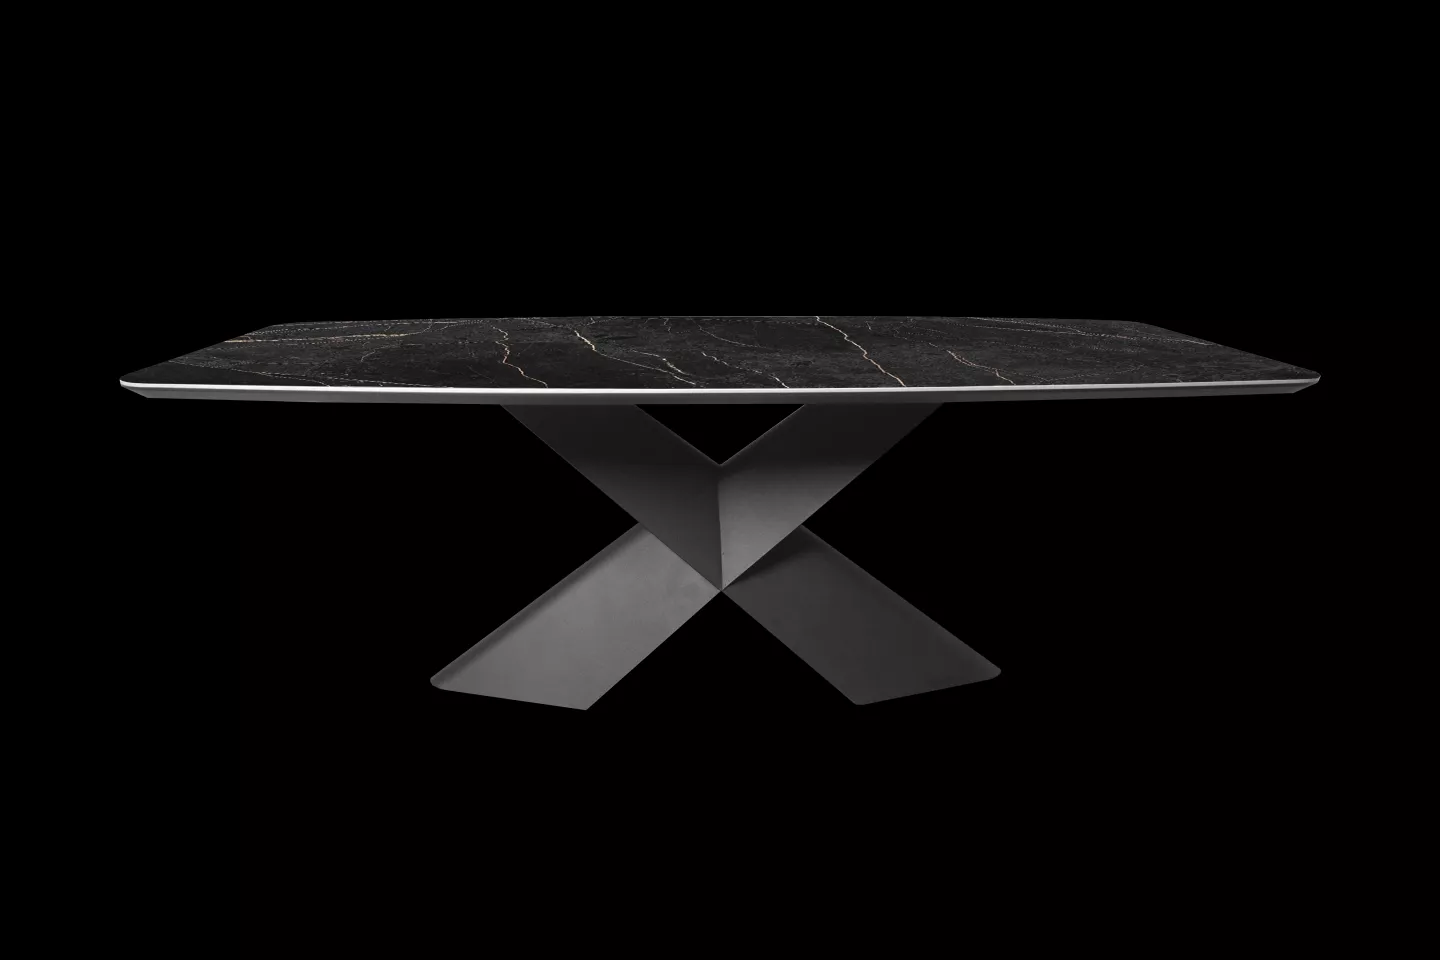 義大利陶板餐桌/岩板餐桌搭配黑色X型餐桌腳座